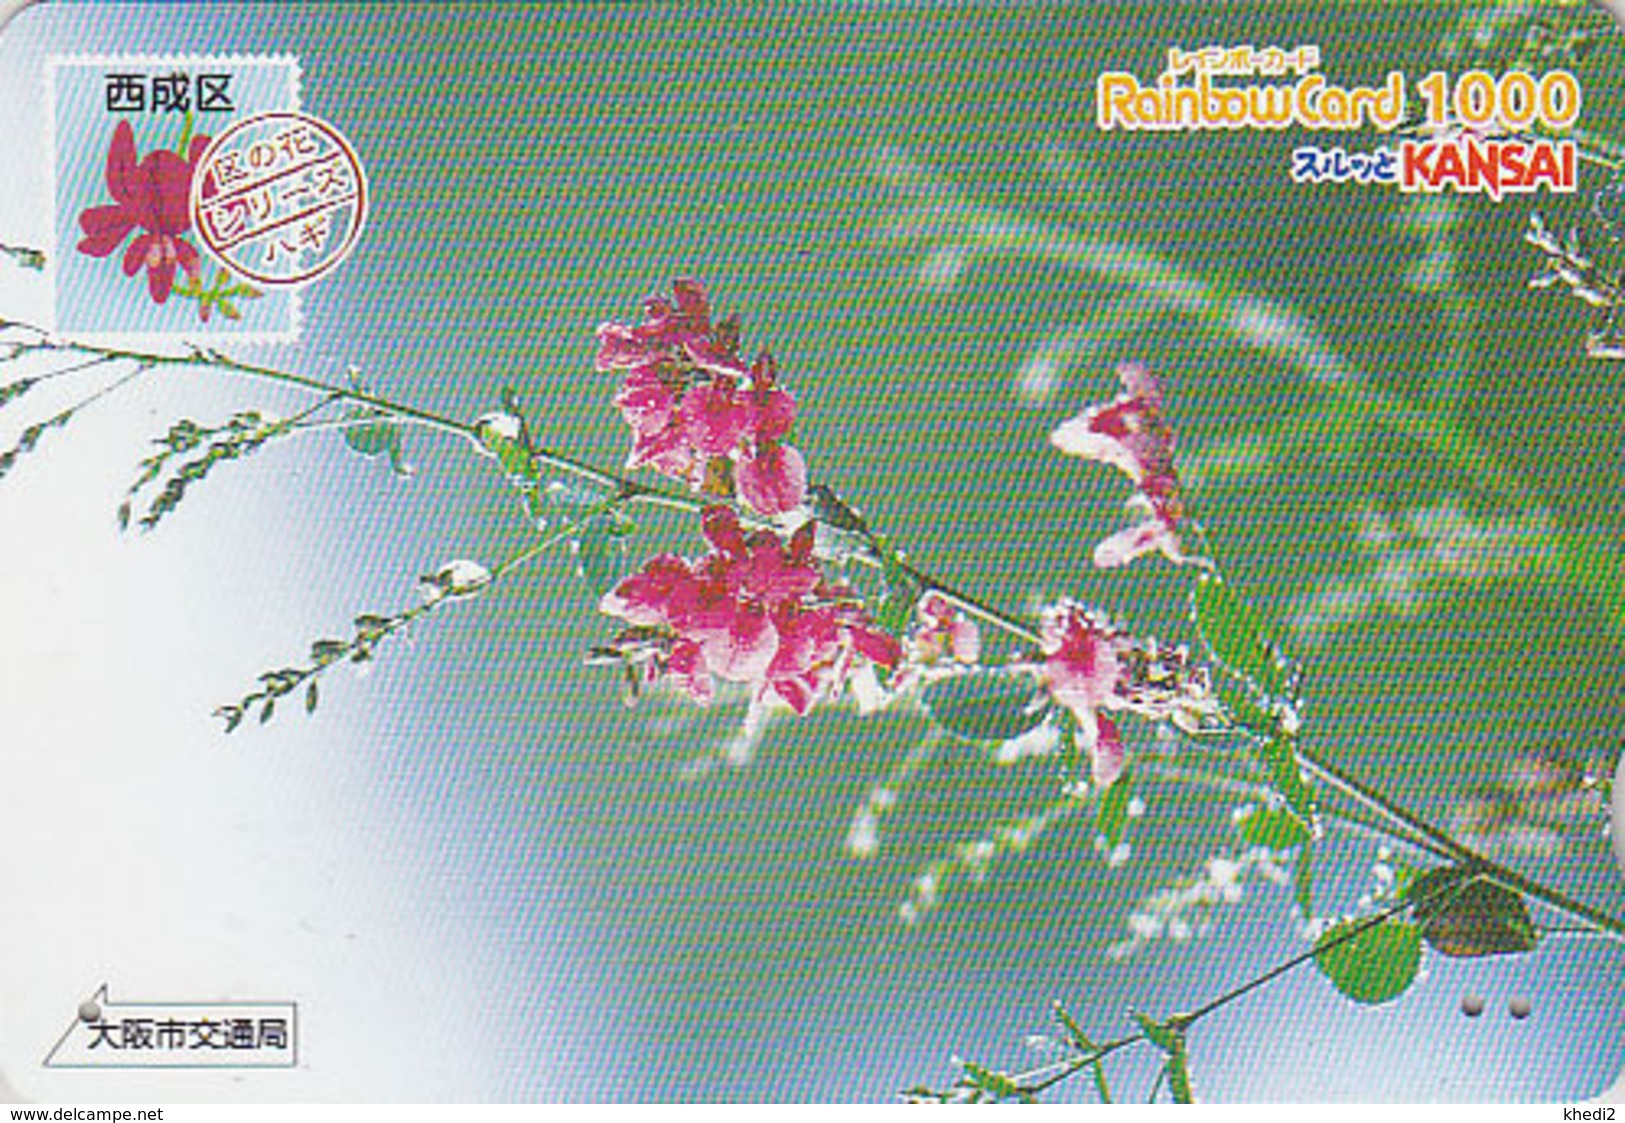 Carte Prépayée Japon - FLEUR - LESPEDEZA Sur TIMBRE Série 10/16 - FLOWER On STAMP Japan Rainbow Card - 2464 - Briefmarken & Münzen